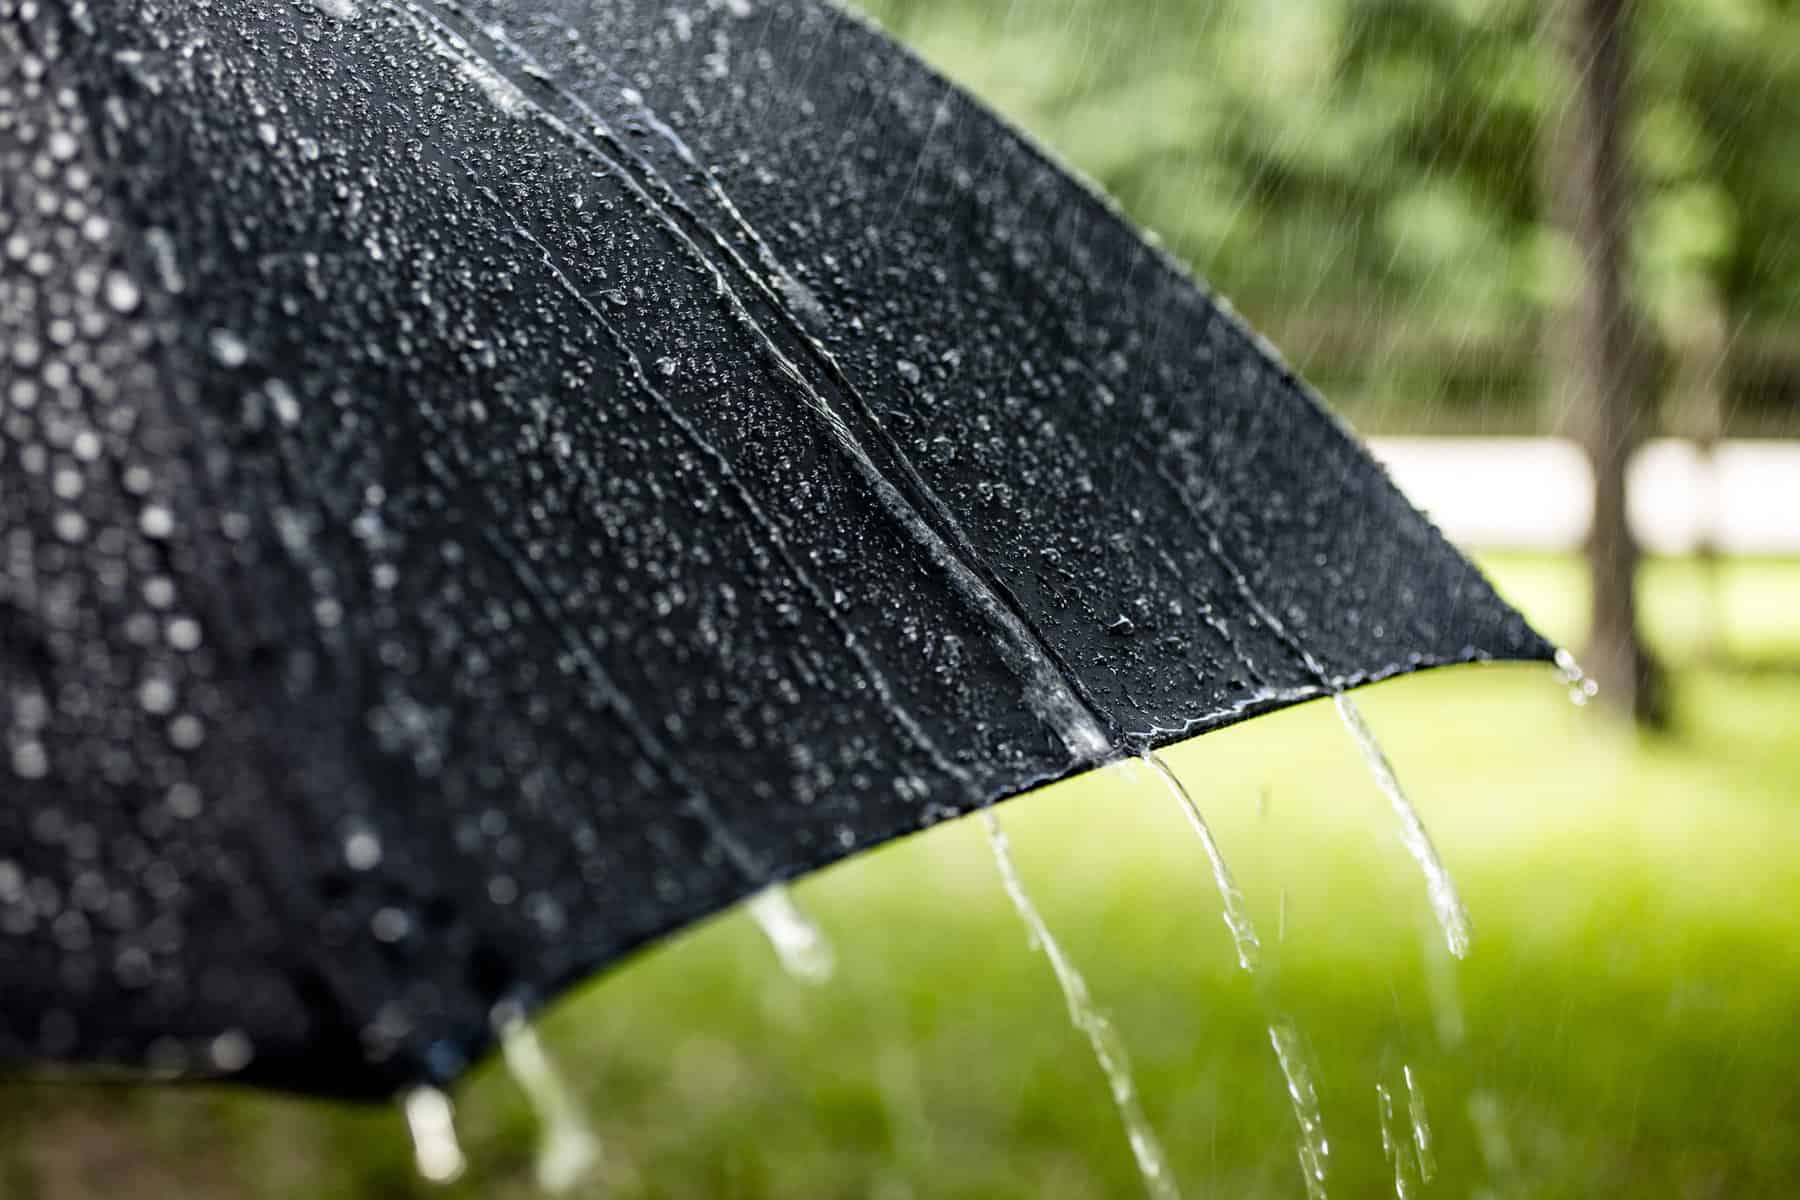 rain rolls off a protective umbrella in a rainstorm